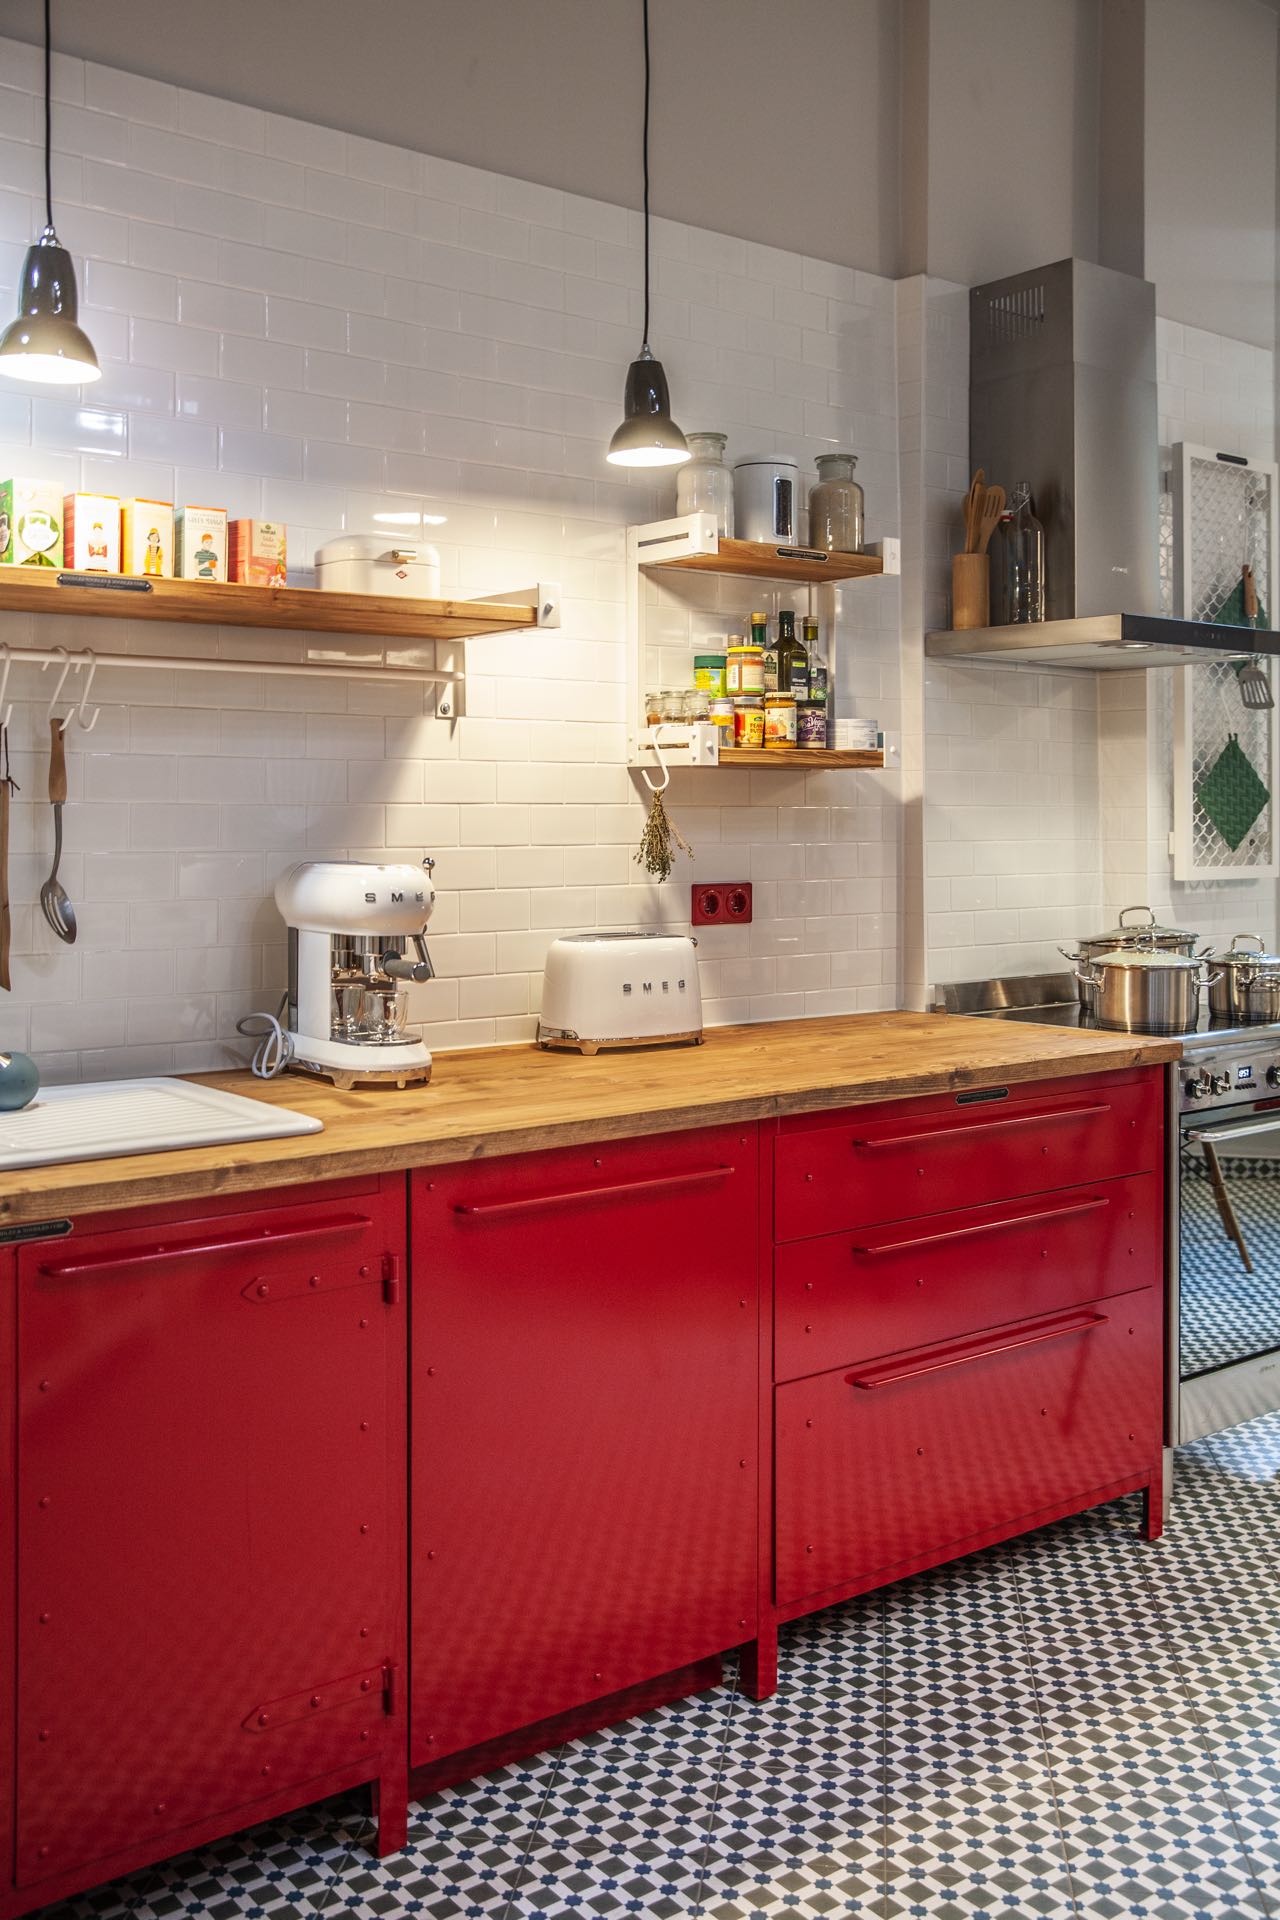 Wer sagt, dass der Industrial Look immer Schwarz oder Grau sein muss? Authentic Kitchen aus Berlin beweist mit den roten Fronten im Fabrik-Stil, dass das auch passt und noch dazu ein schöner Eyecatcher ist. 